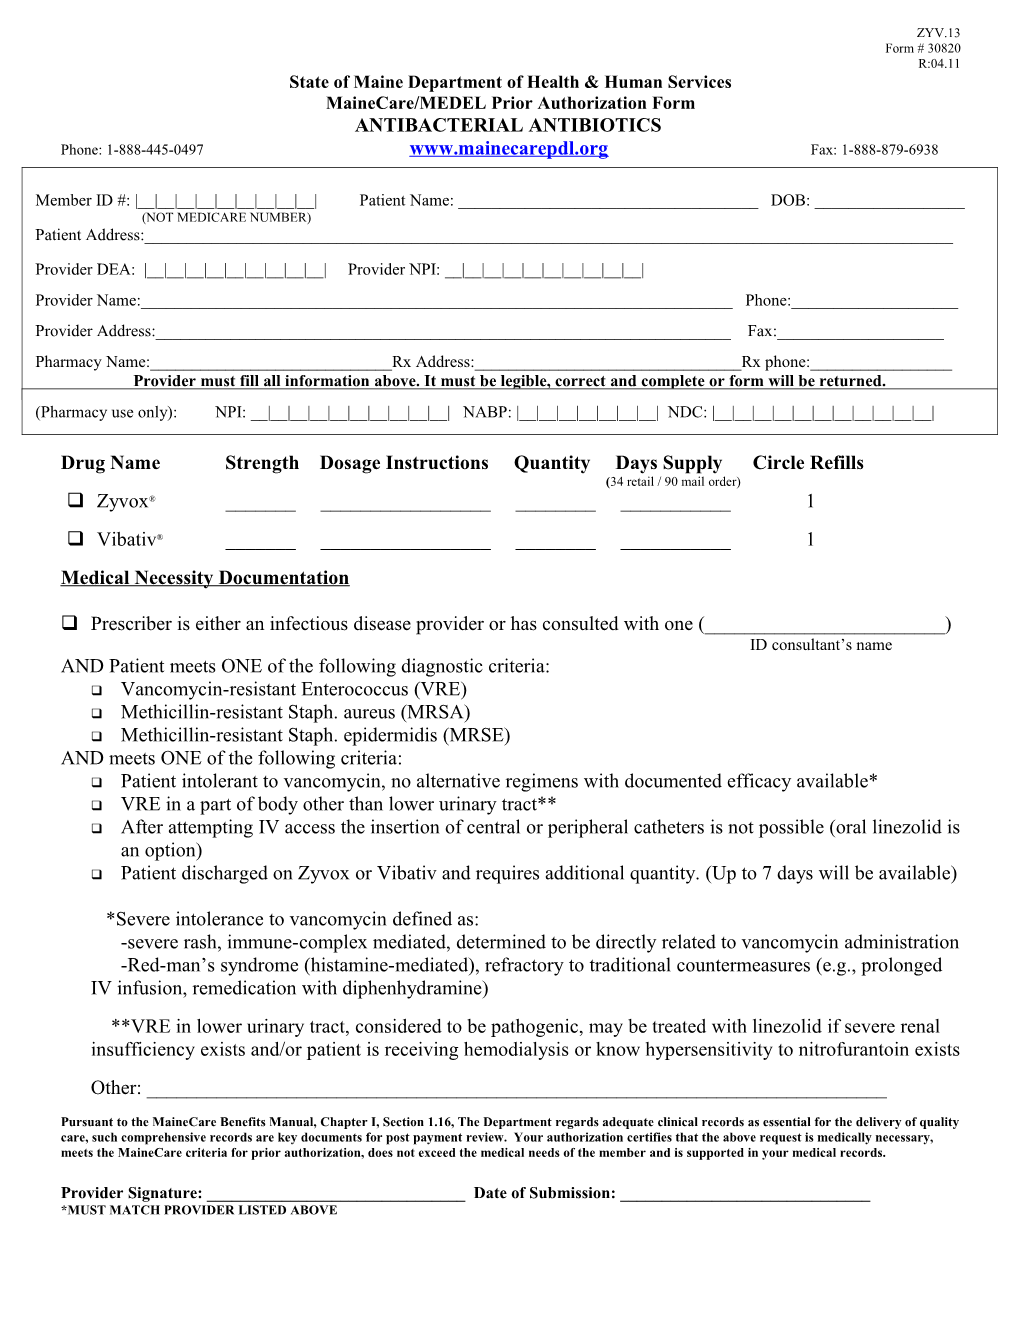 Prior Authorization Form s1